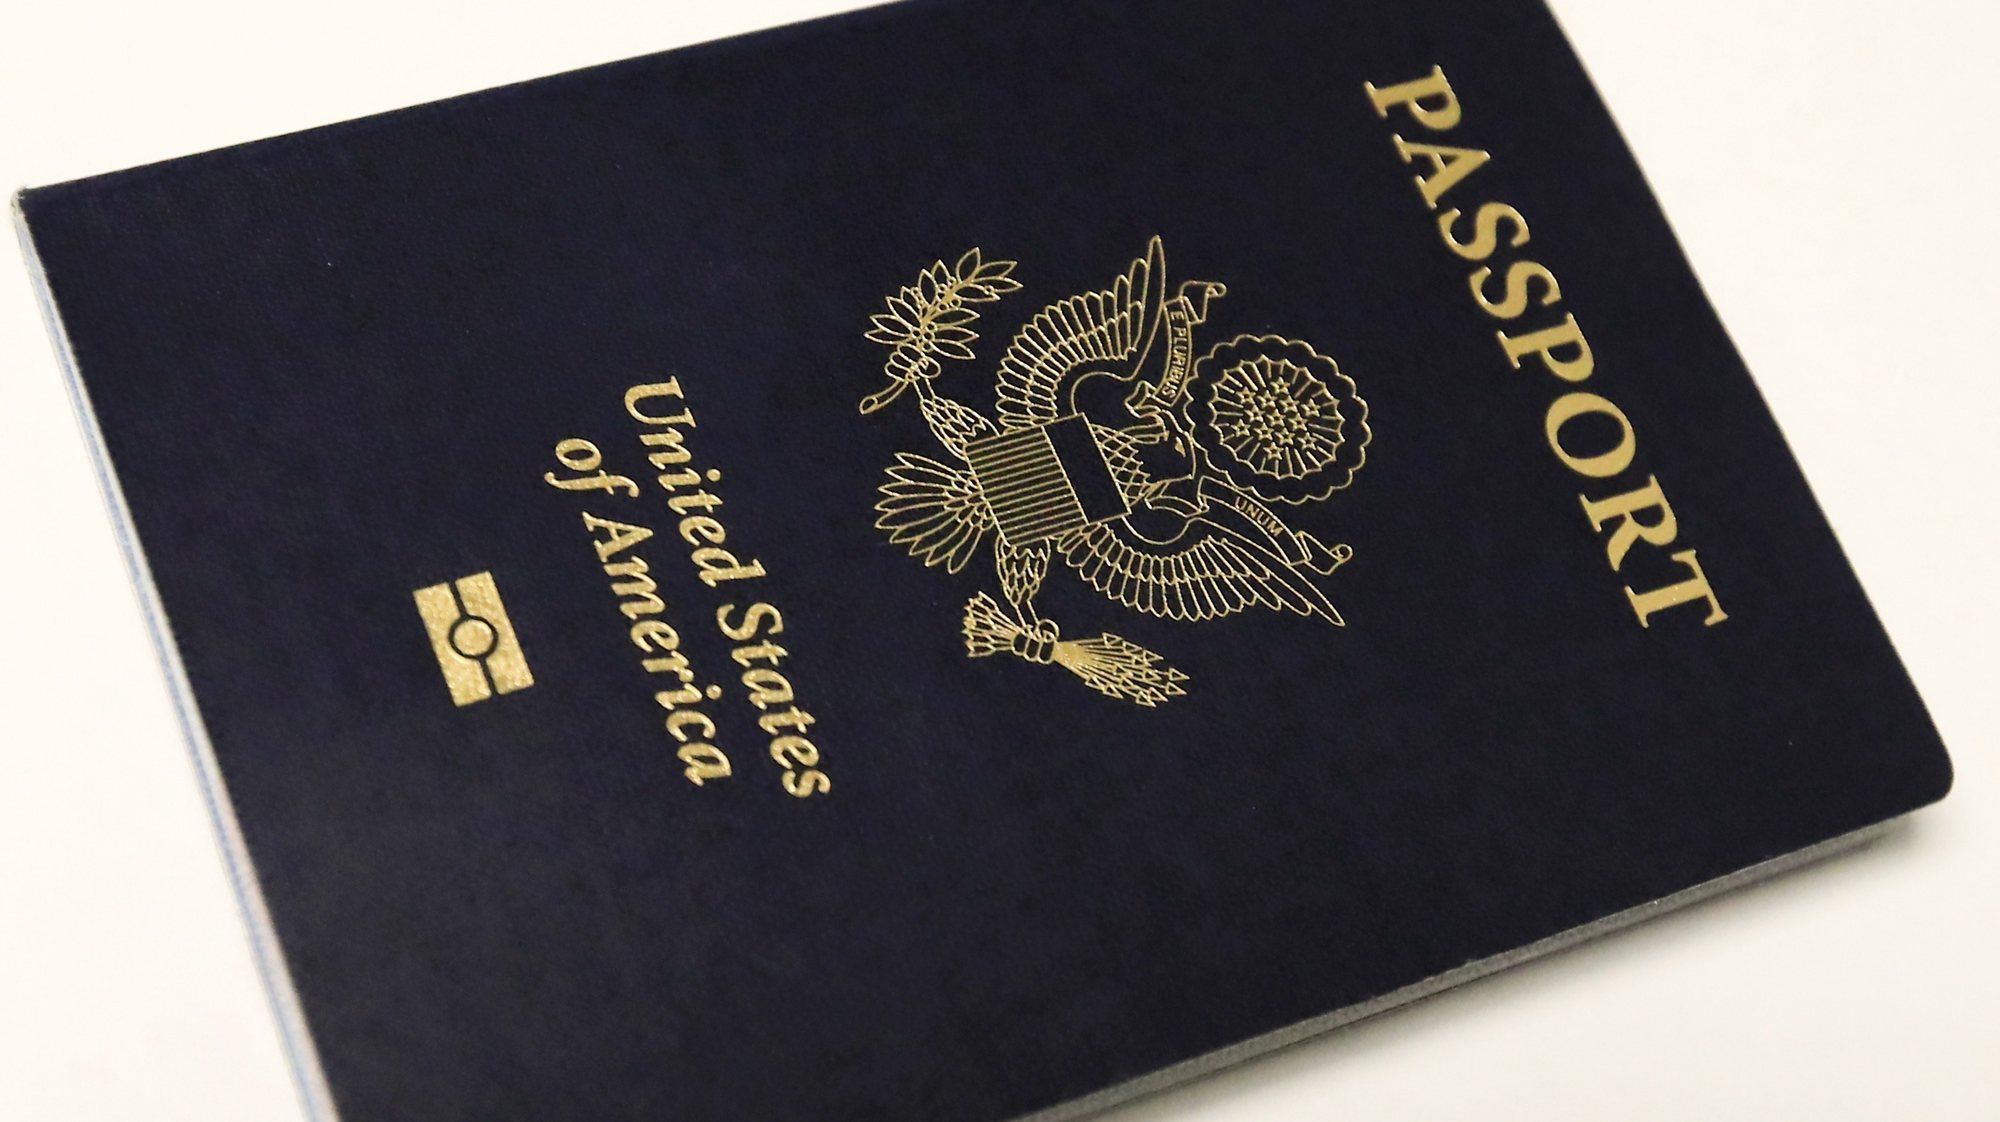 Passaporte dos Estados Unidos da América